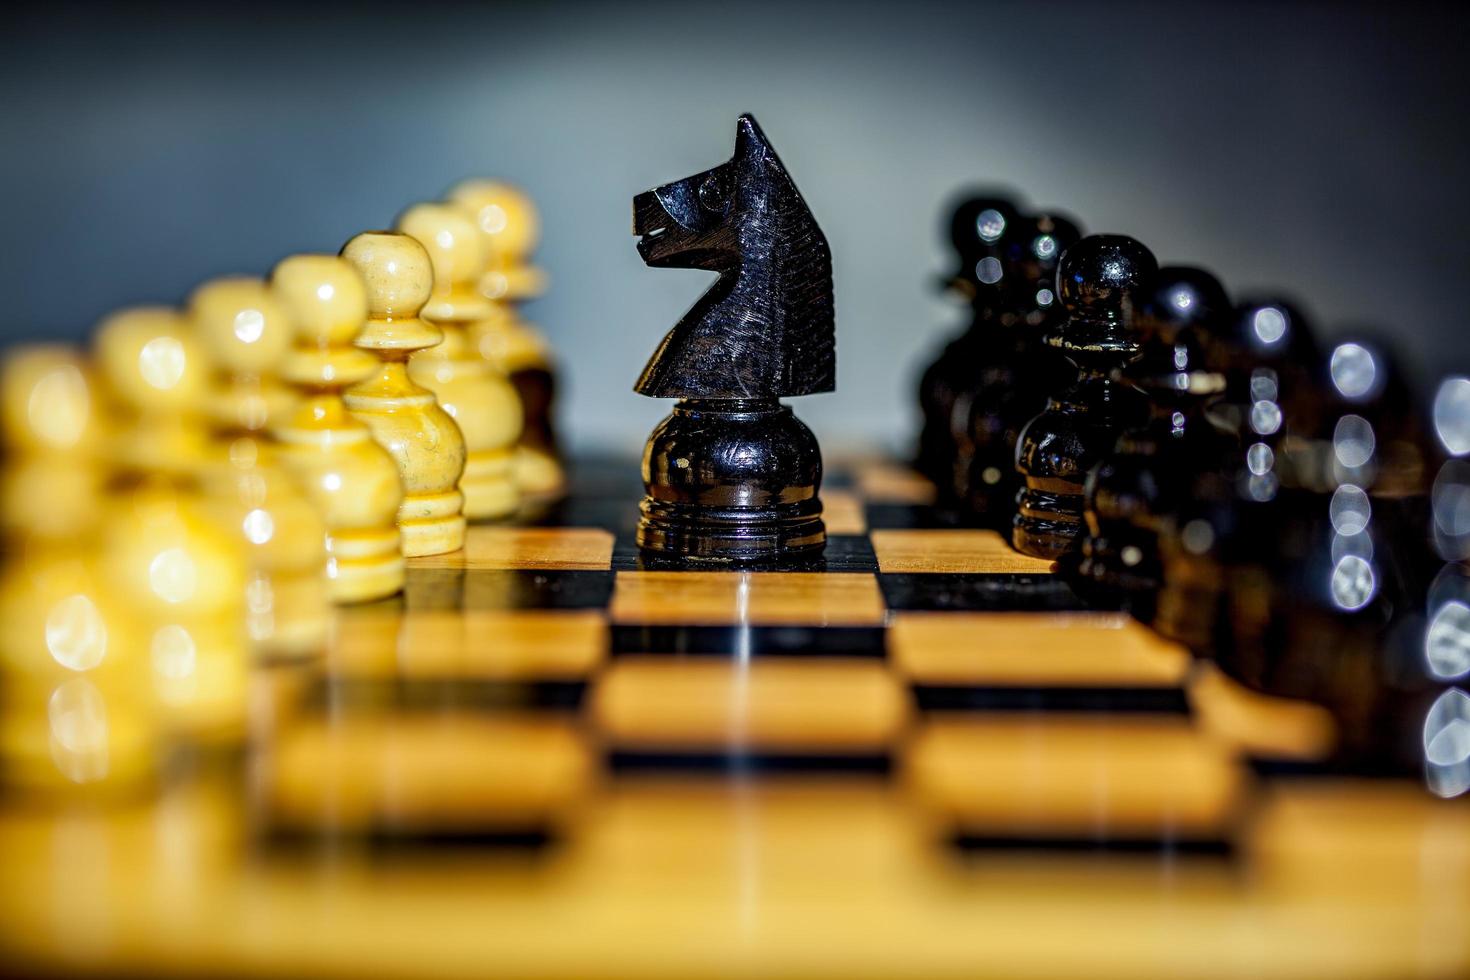 närbild av en svart riddare och bönder på ett schackbräde foto